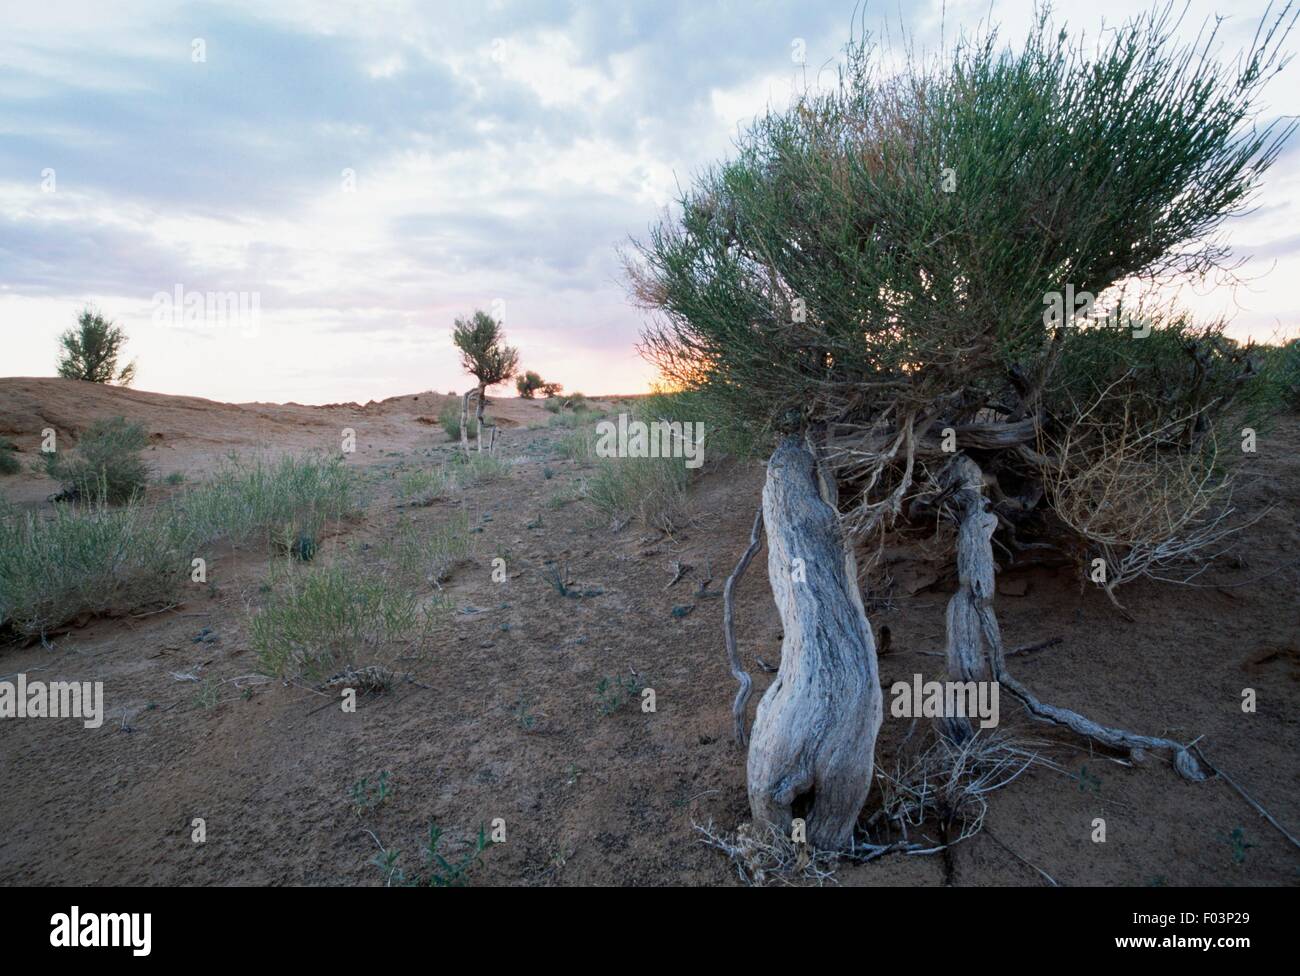 Saxaul (Haloxylon ammodendron), Amaranthaceae, Gobi Desert, Mongolia. Stock Photo